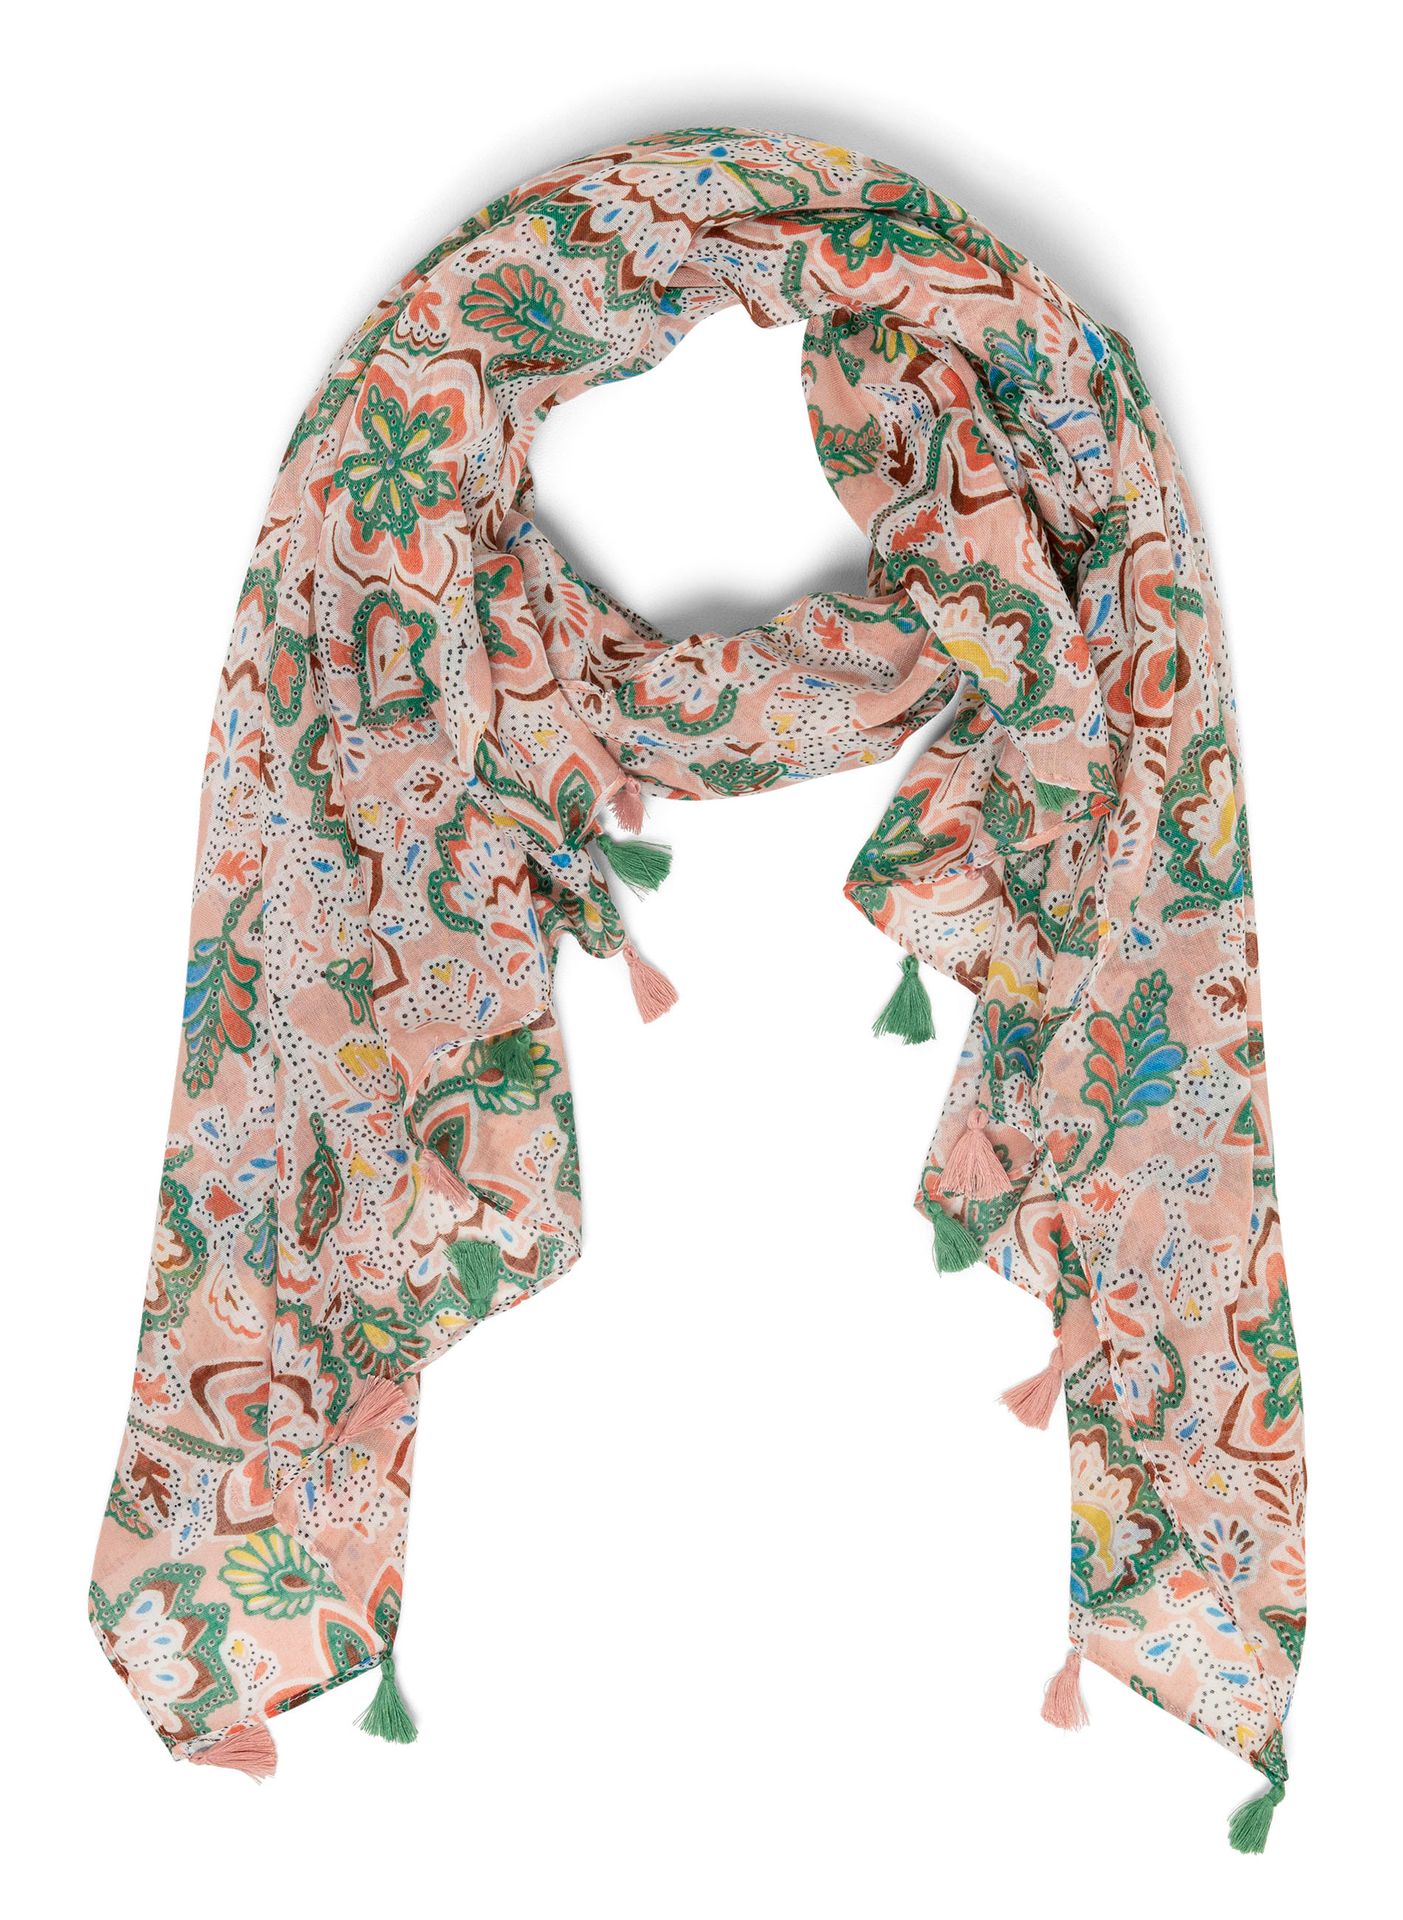 Norah Pastelkleurige sjaal pastel rose multicolor 213593-914